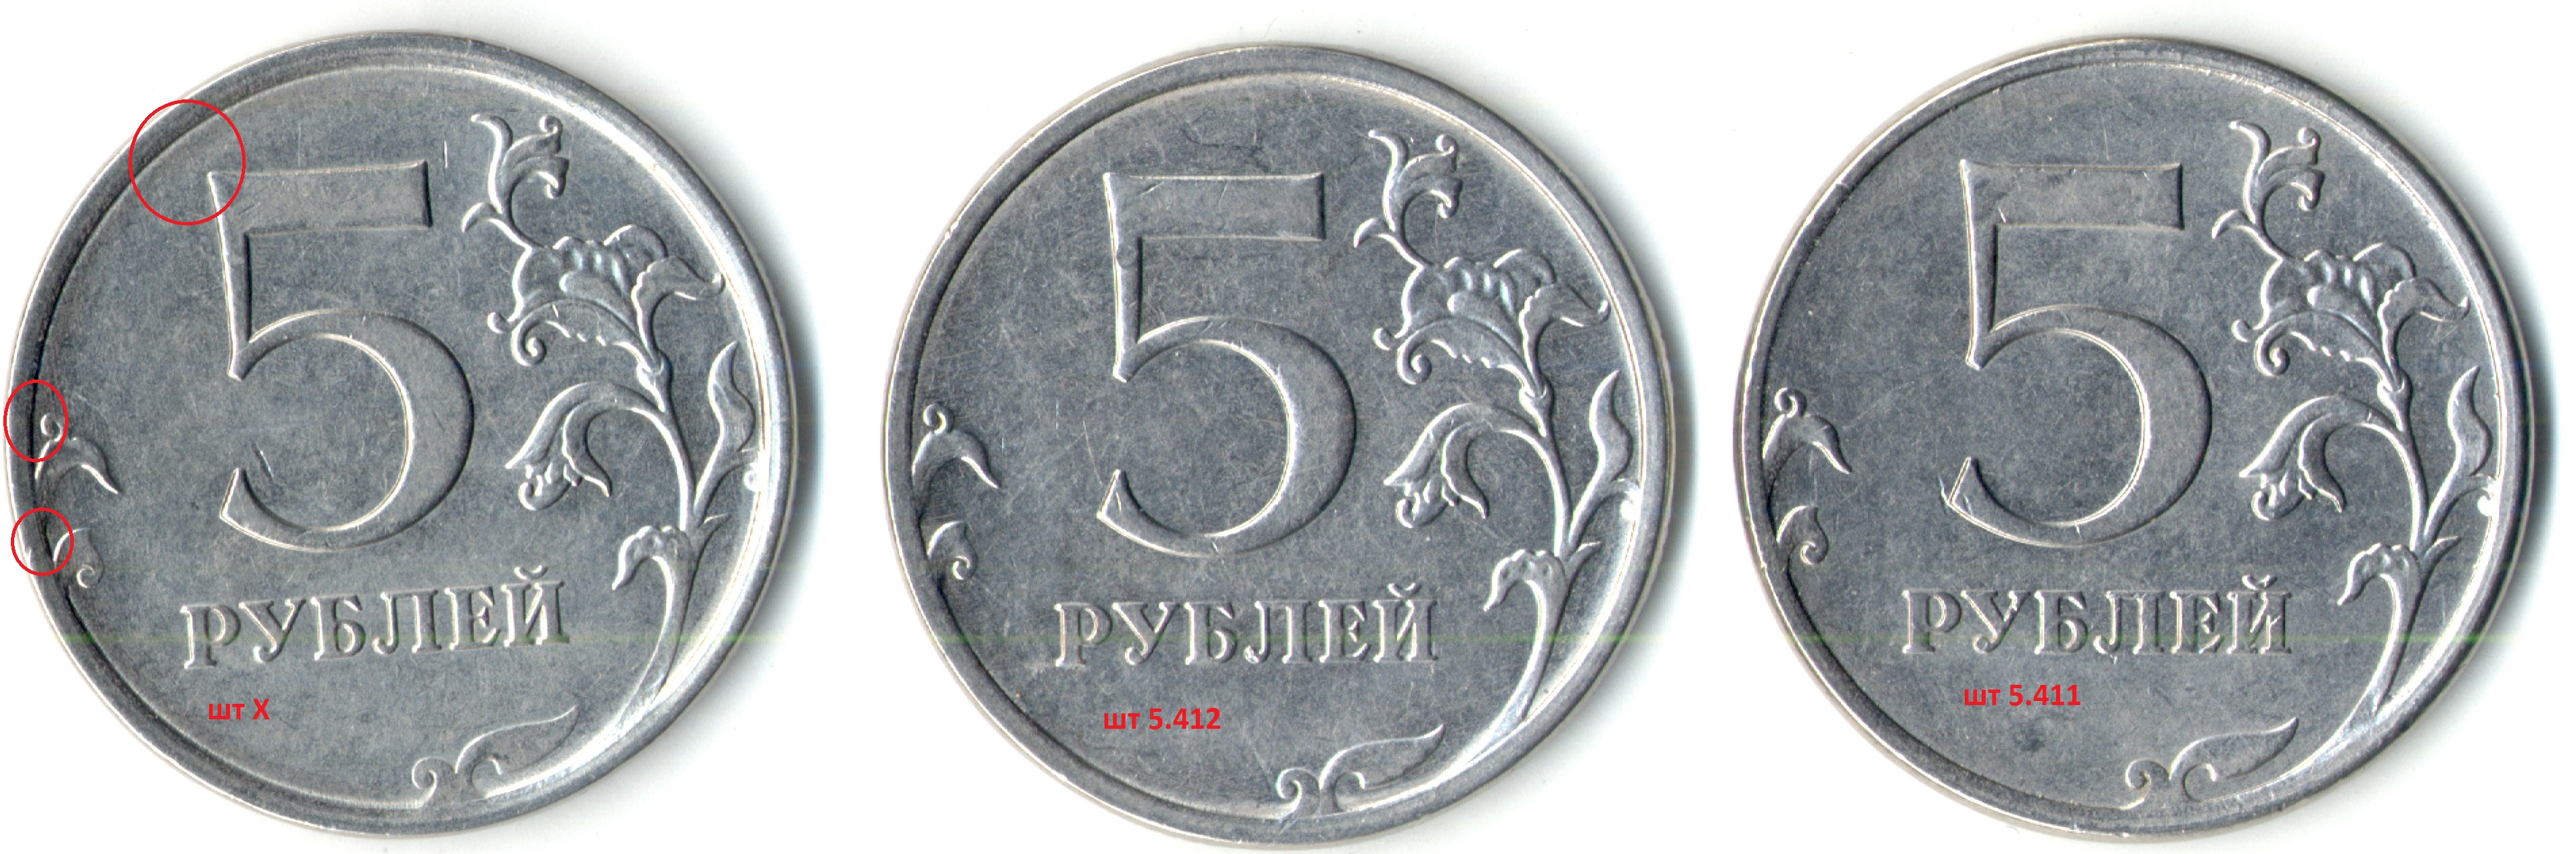 5 рублей все штемпеля 3